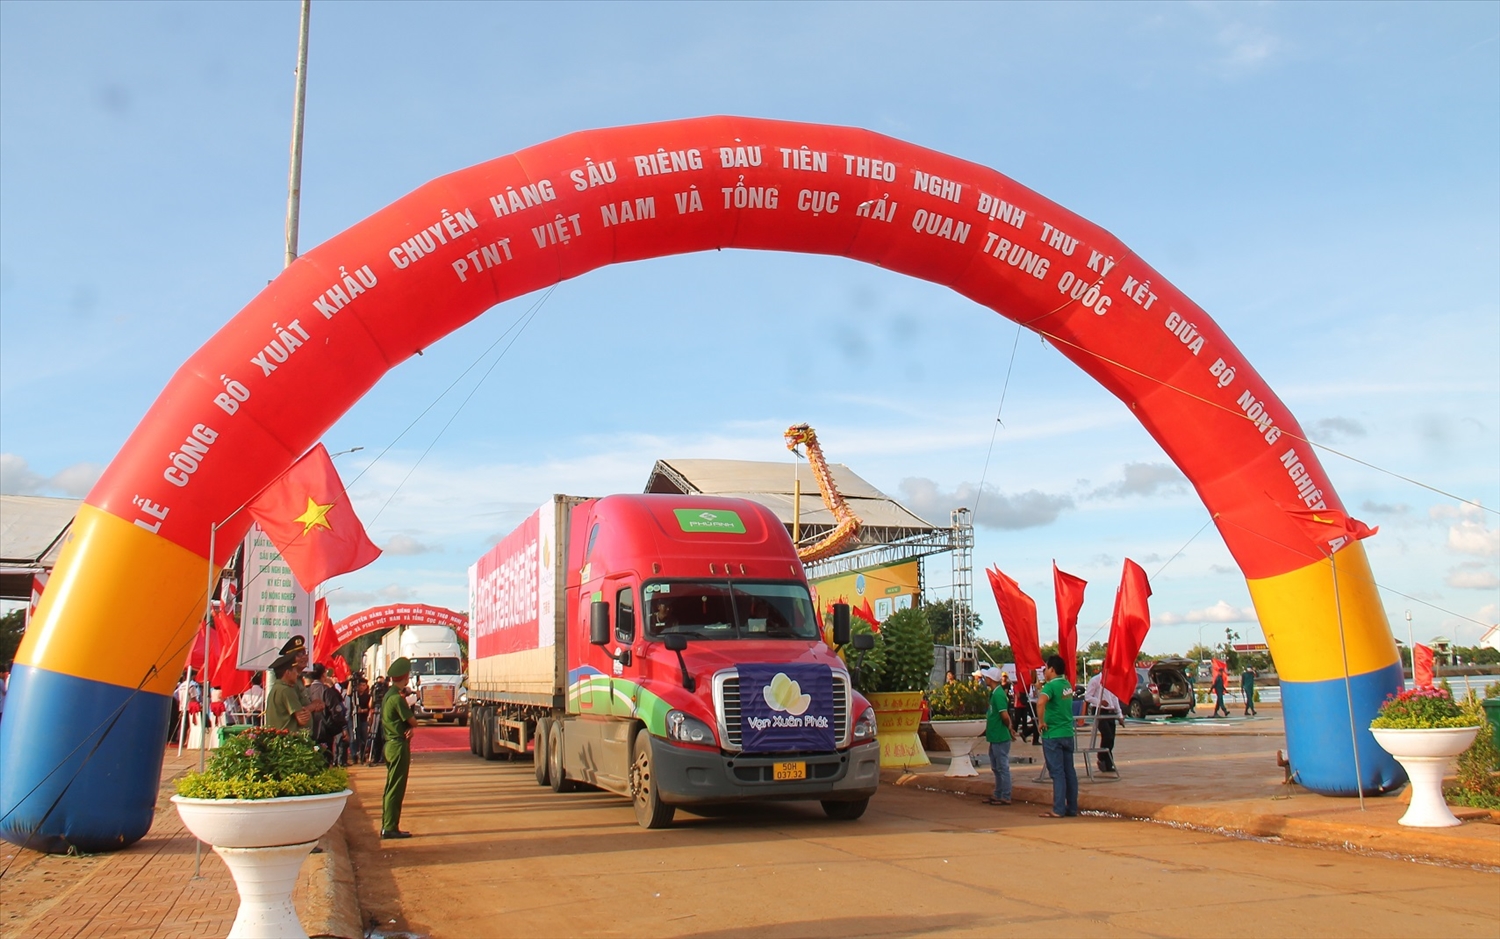 Chuyển xe chở những lô hàng sầu riêng xuất khẩu chính ngạch đầu tiên sang thị trường Trung Quốc lăn bánh từ huyện Krông Păk